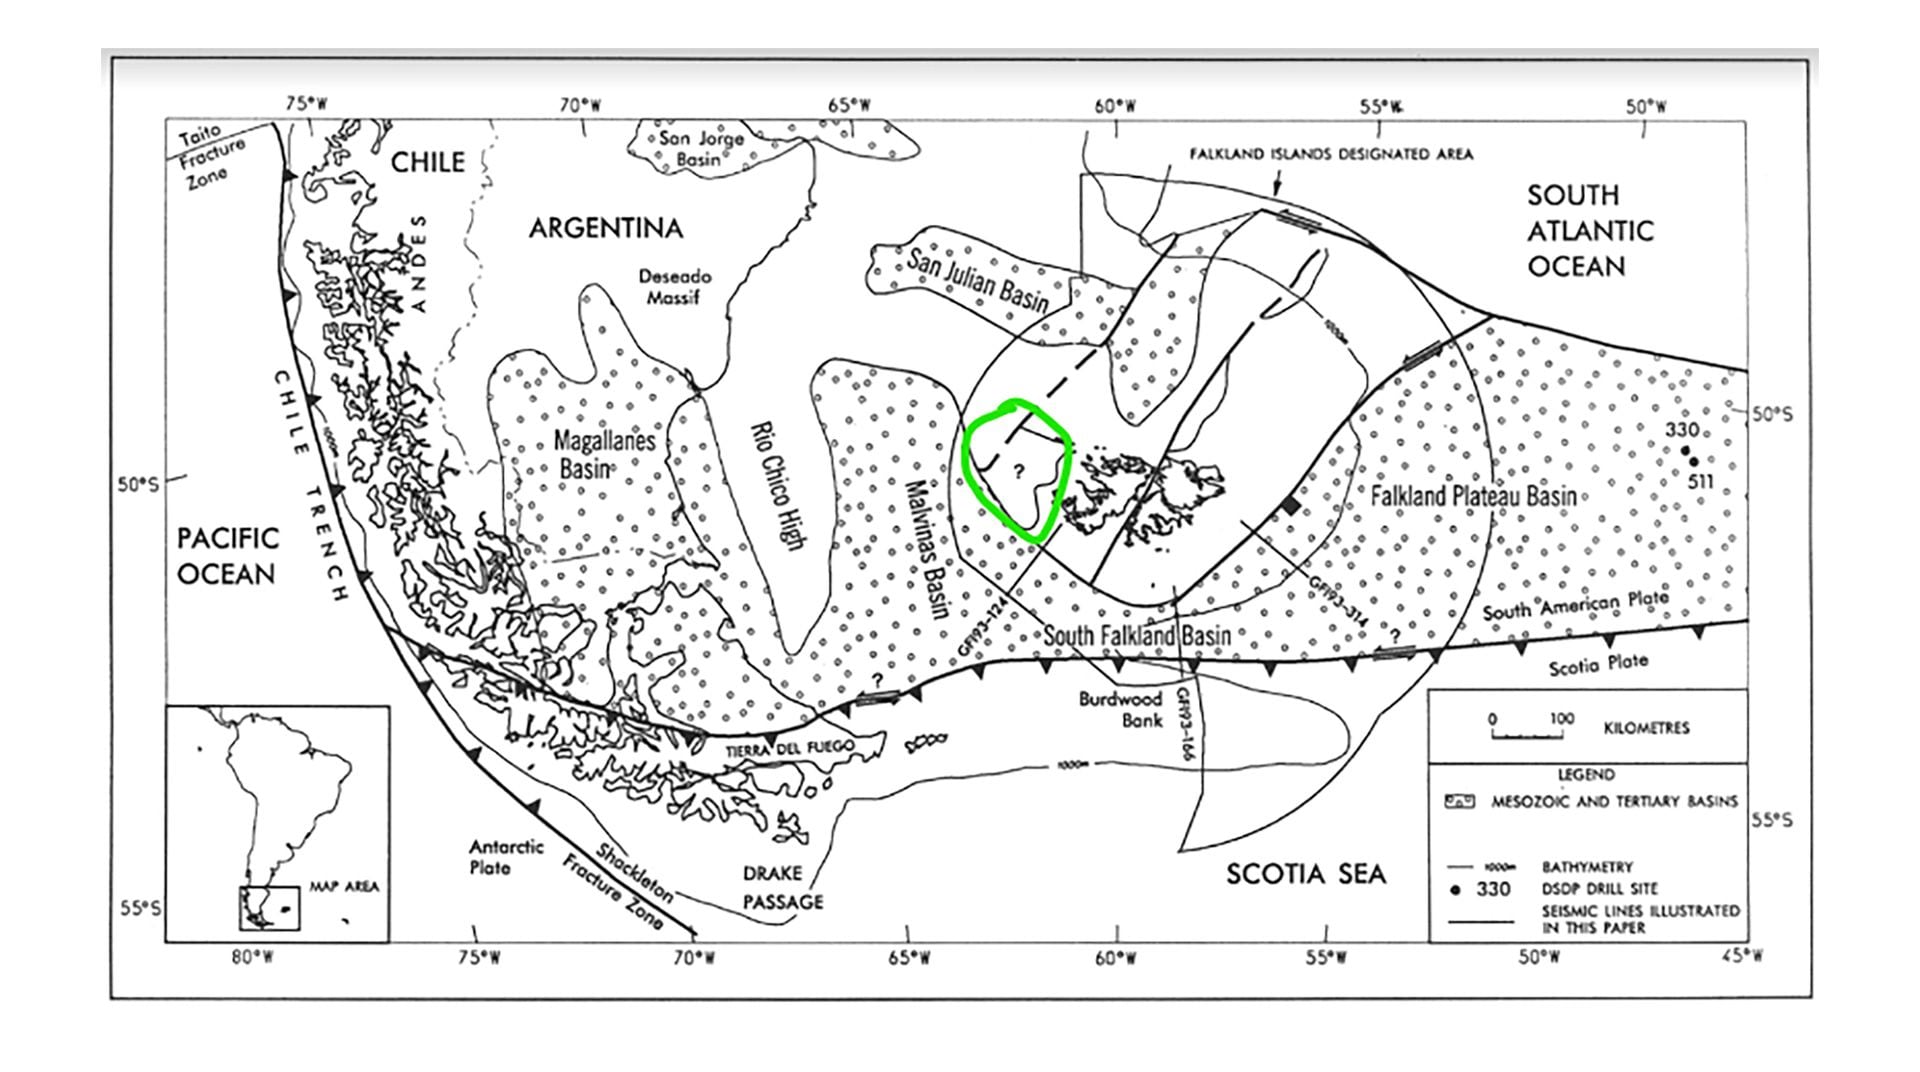 El mapa incluido en un paper inglés de 1995. Ubica un signo de interrogación en la zona anómala cercana a Malvinas